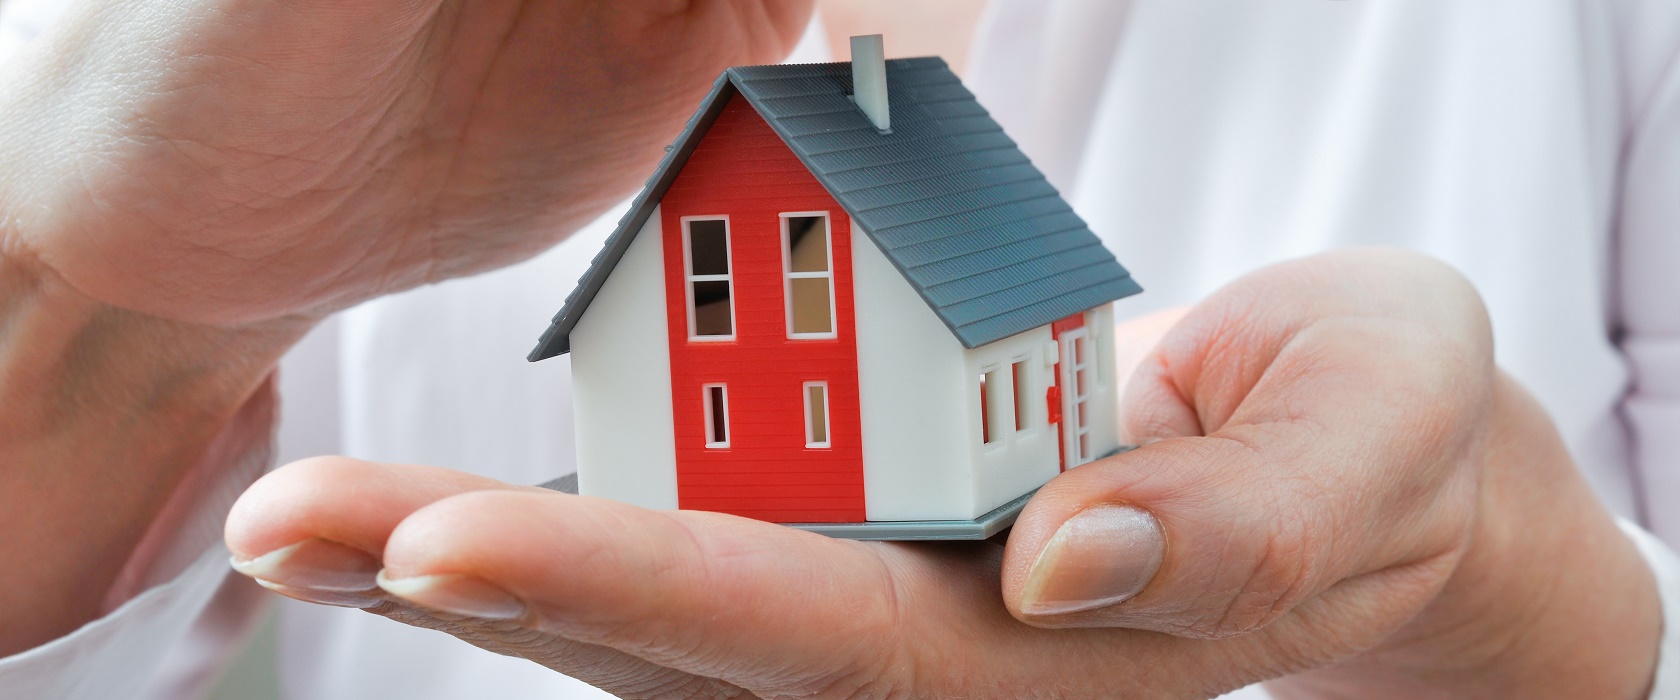 Eine Miniatur-Figur eines Hauses, mit einem rot-weißen Anstrich und einem grauen Giebel, wird in der linken Hand eines Mannes gehalten, während die rechte sich schützend darüberlegt.